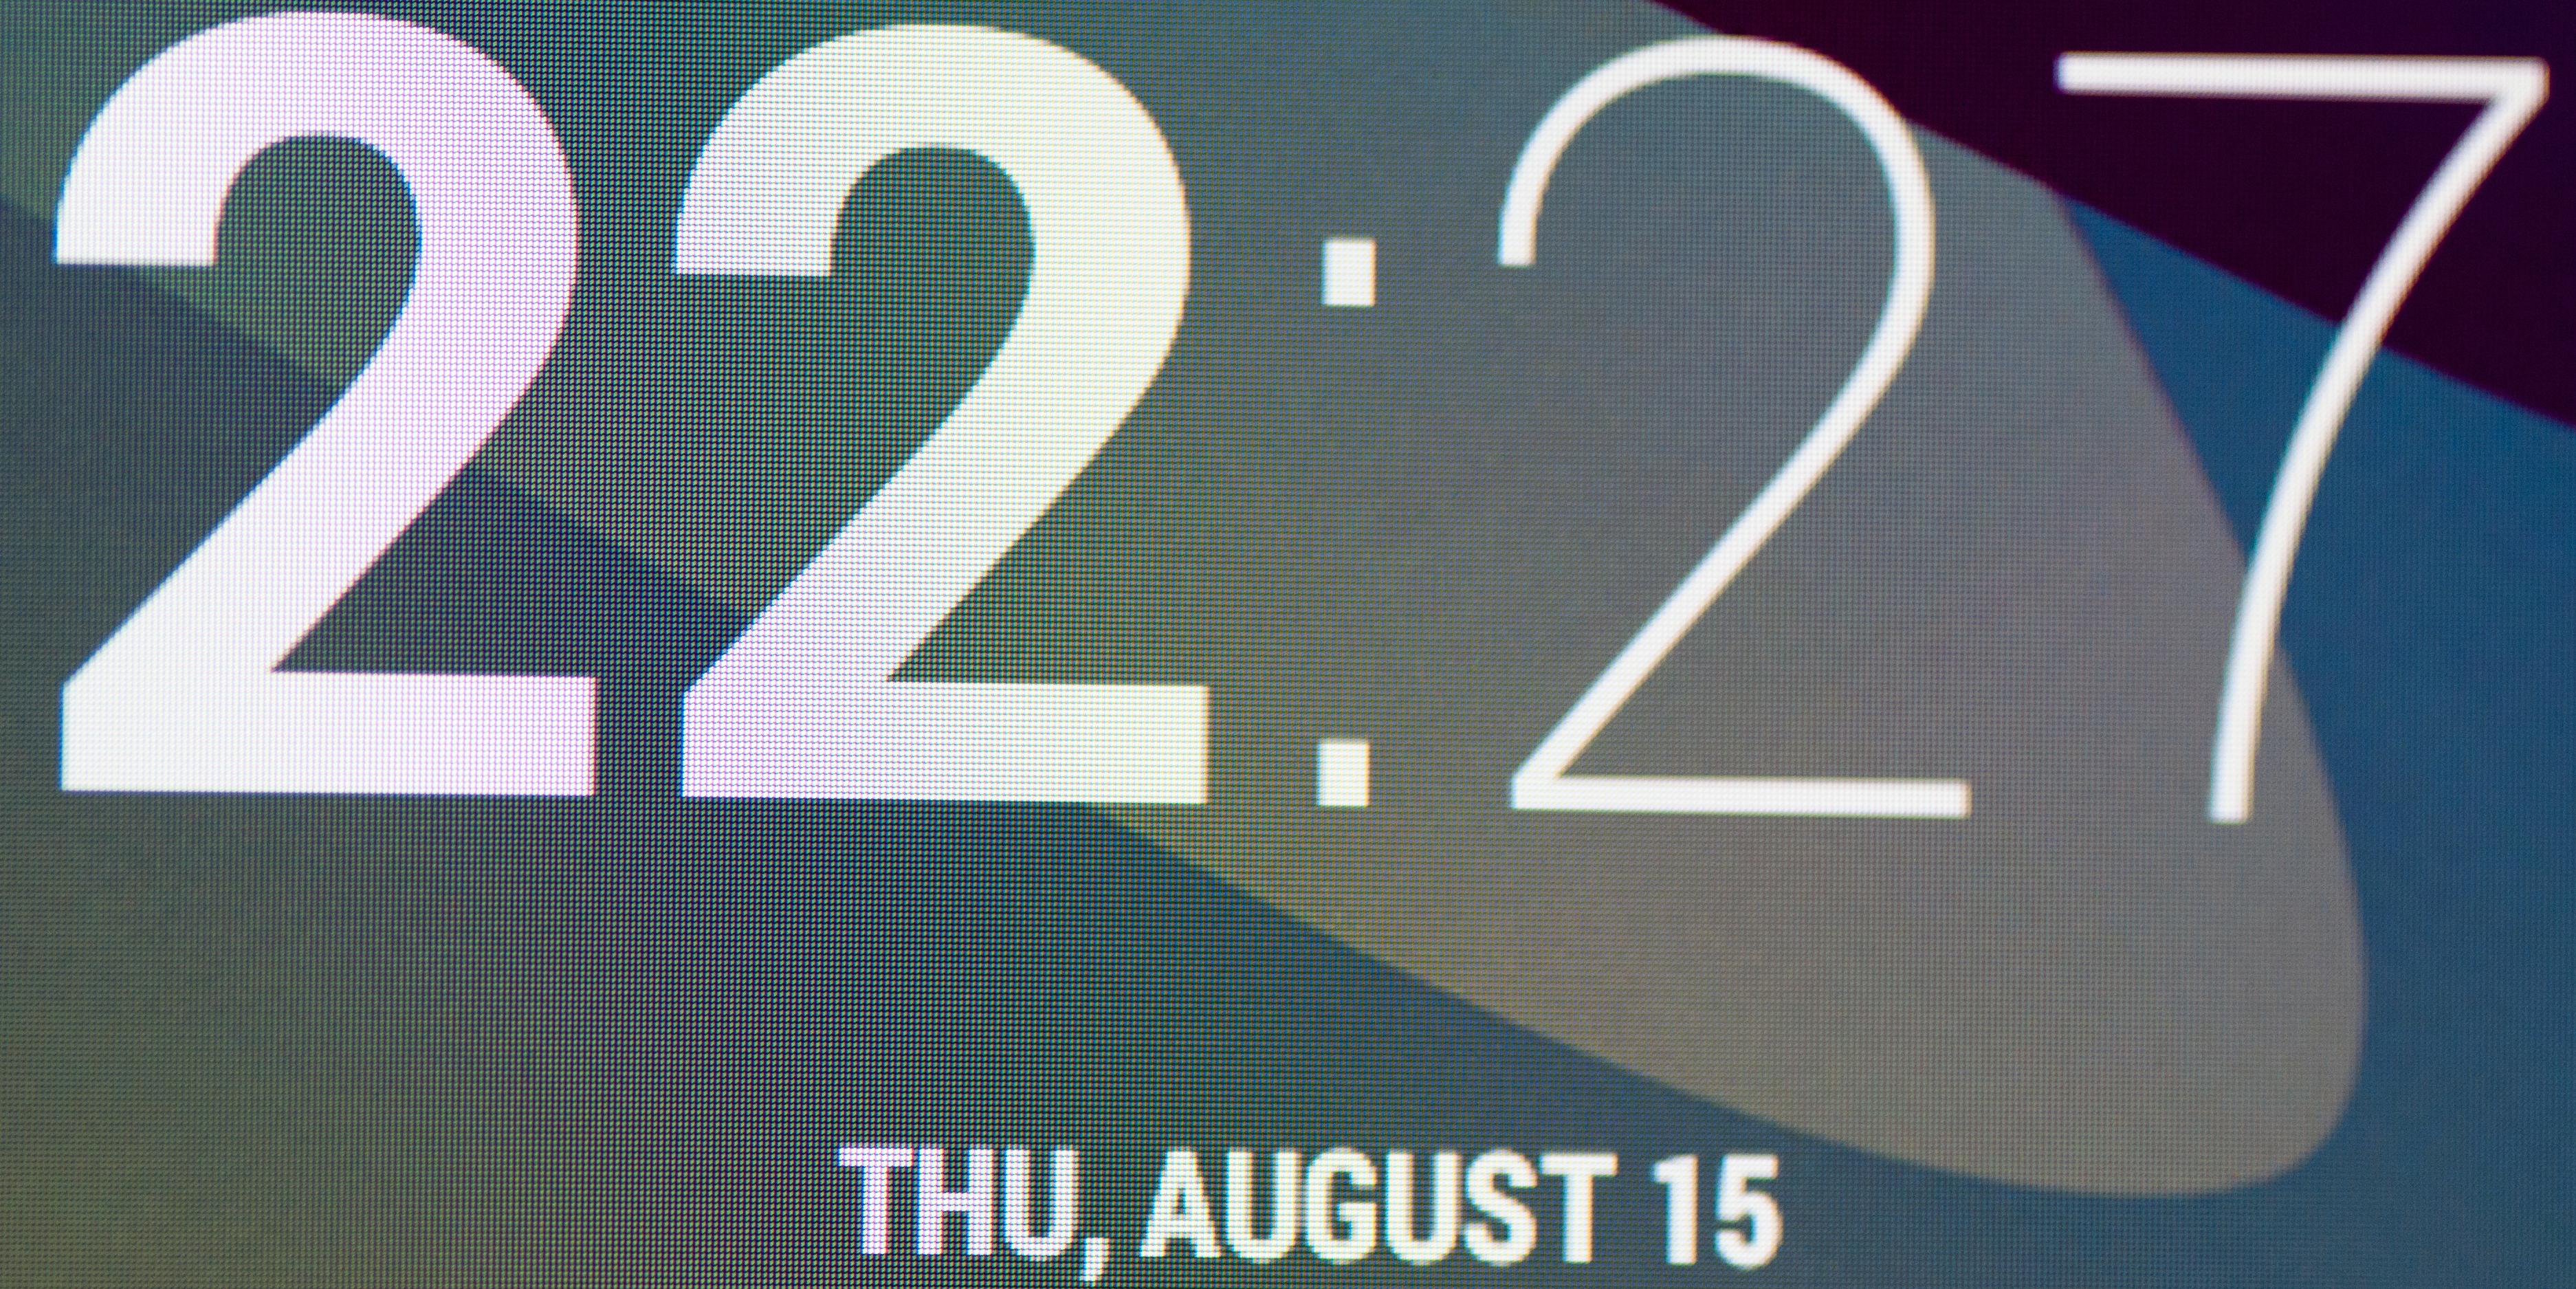 Makrobilde av skjermen i forrige utgave av Nexus 7.Foto: Finn Jarle Kvalheim, Amobil.no